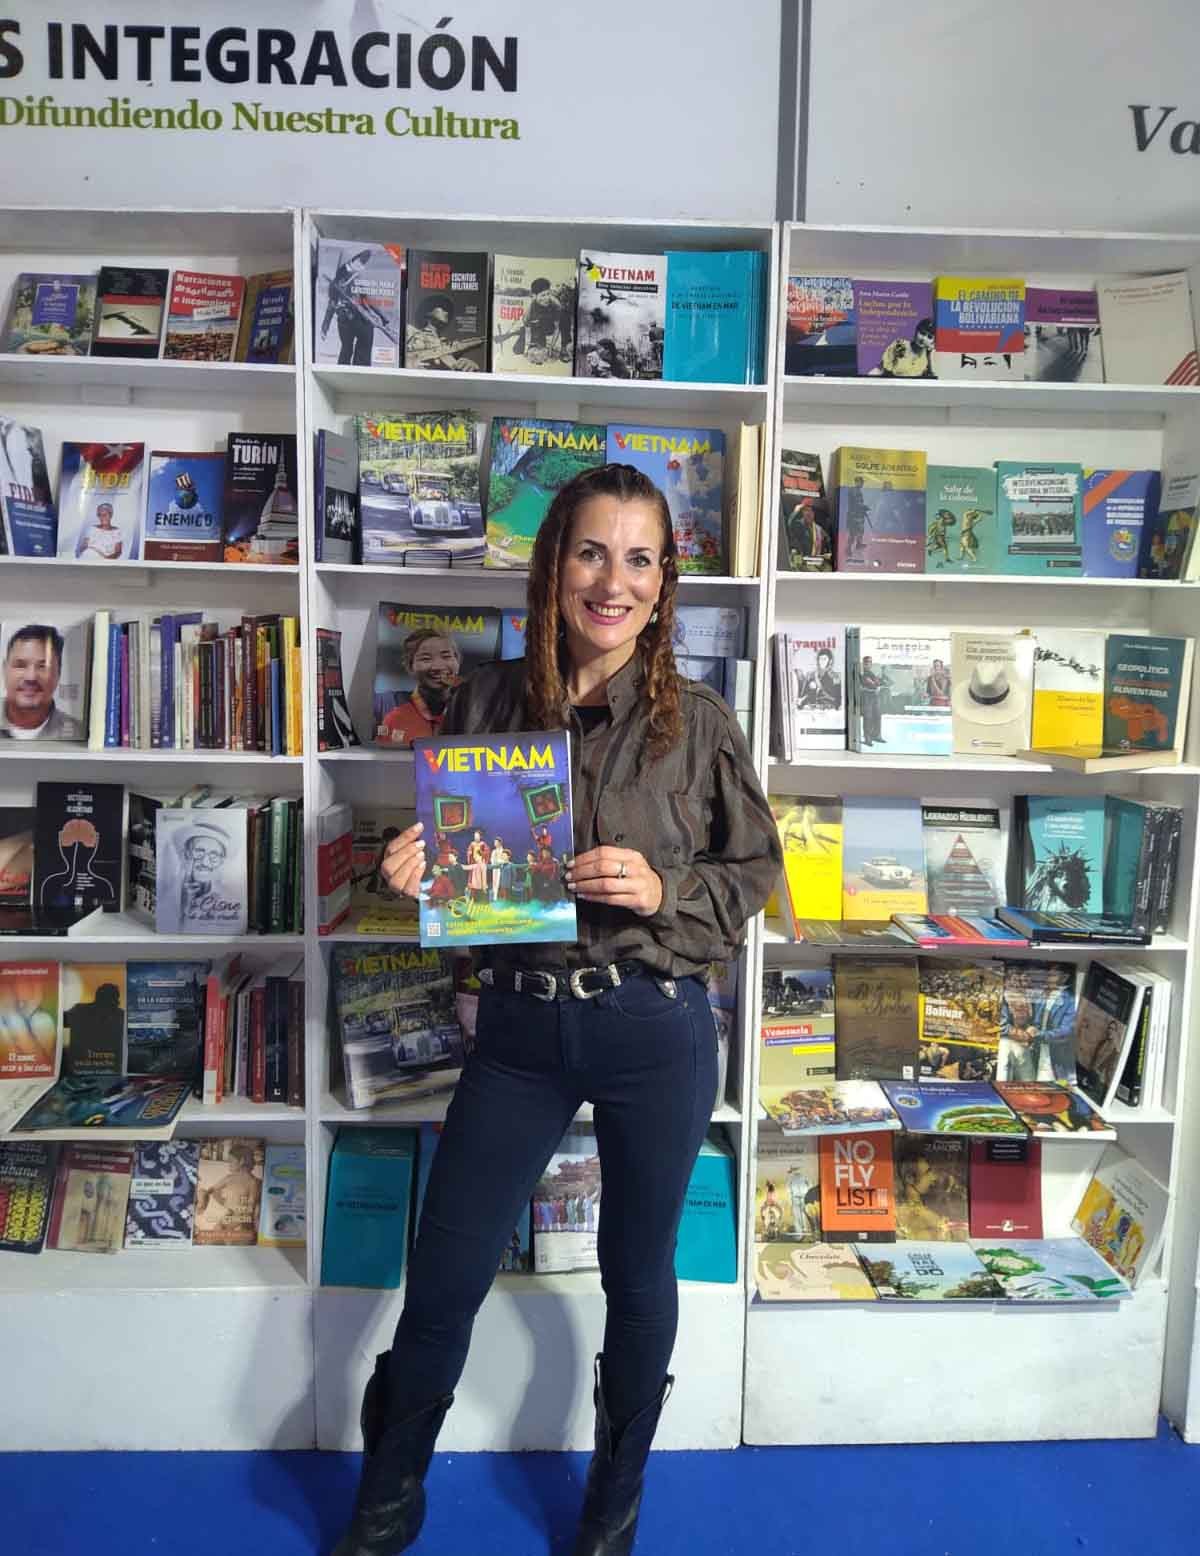 Khai trương không gian Việt NKhông gian Việt Nam tại Hội chợ sách Buenos Aires.am tại Hội chợ sách Buenos Aires ở Argentina